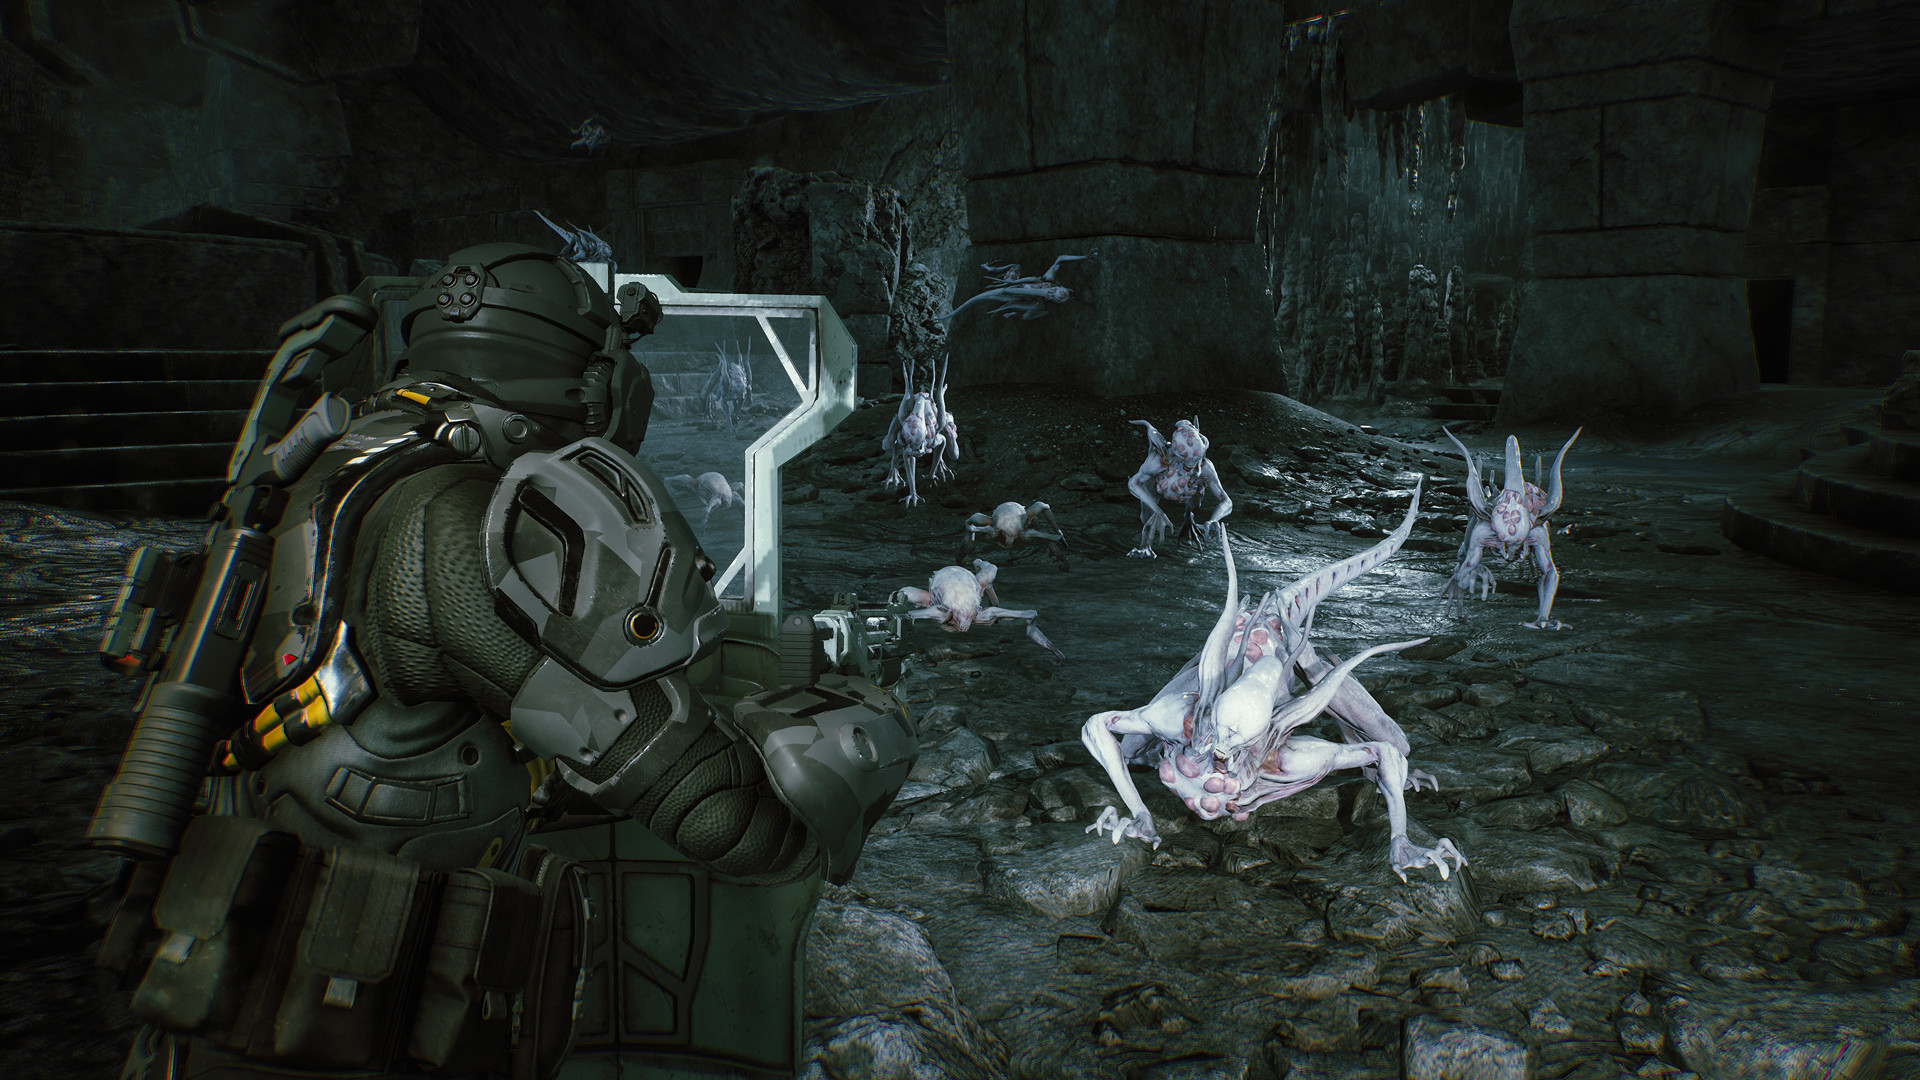 Aliens: Fireteam Elite - Pathogen Expansion DLC Steam CD Key